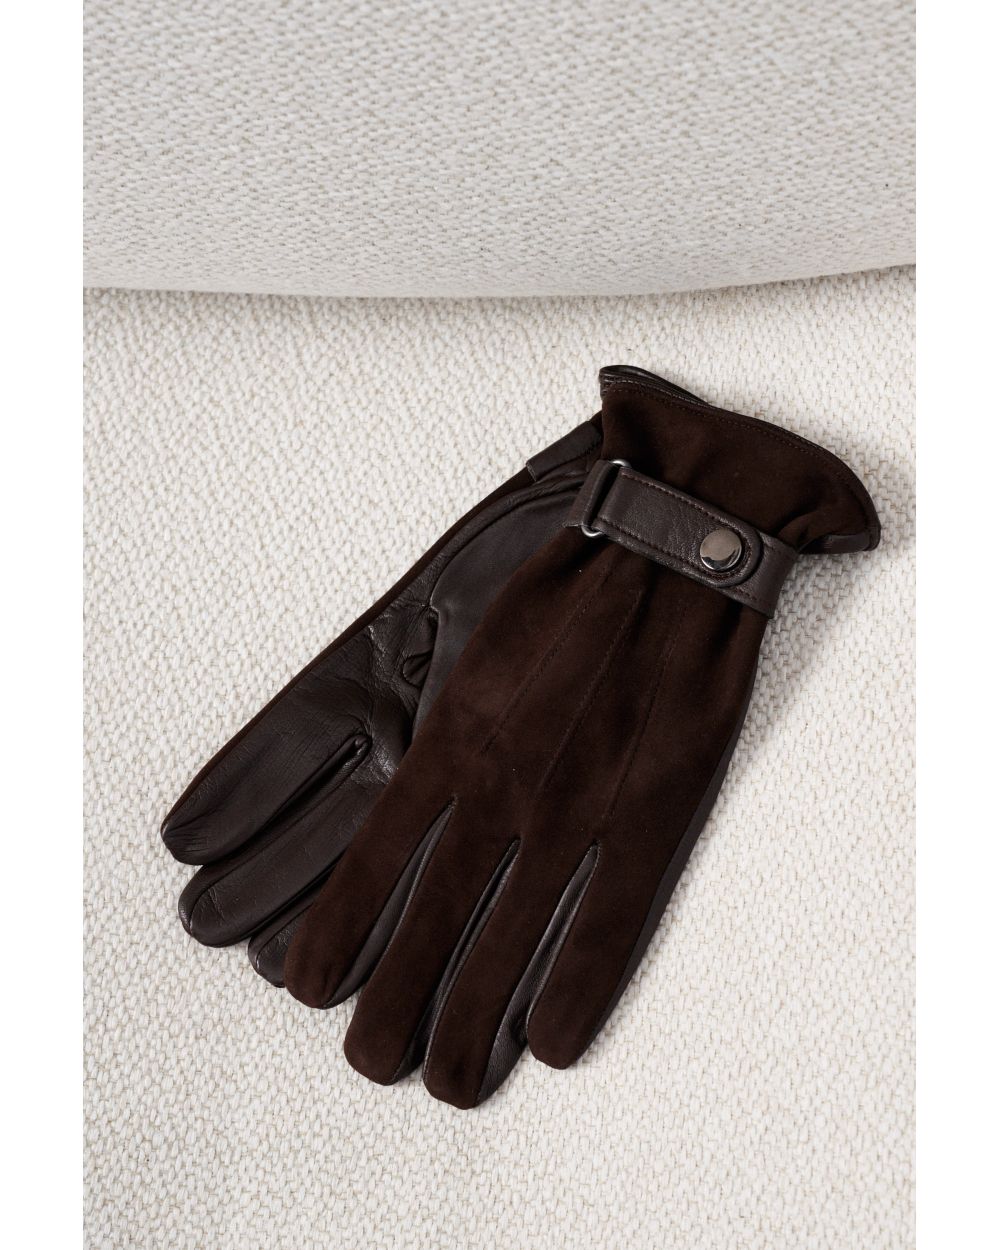 Перчатки мужские кожаные-замшевые, коричневые с застежкой